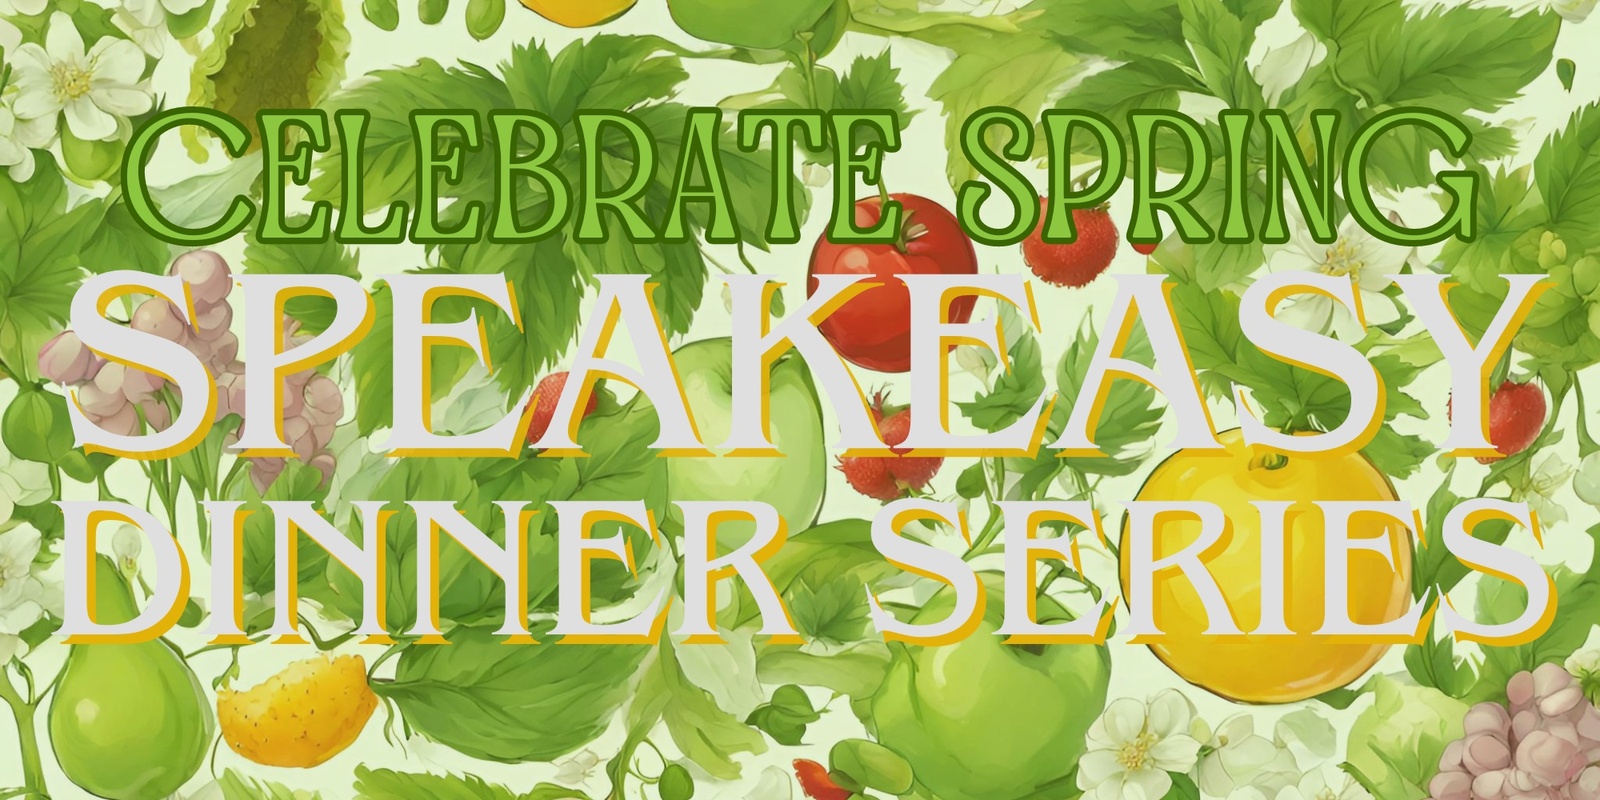 Banner image for Speakeasy Dinner Series - Celebrate Spring